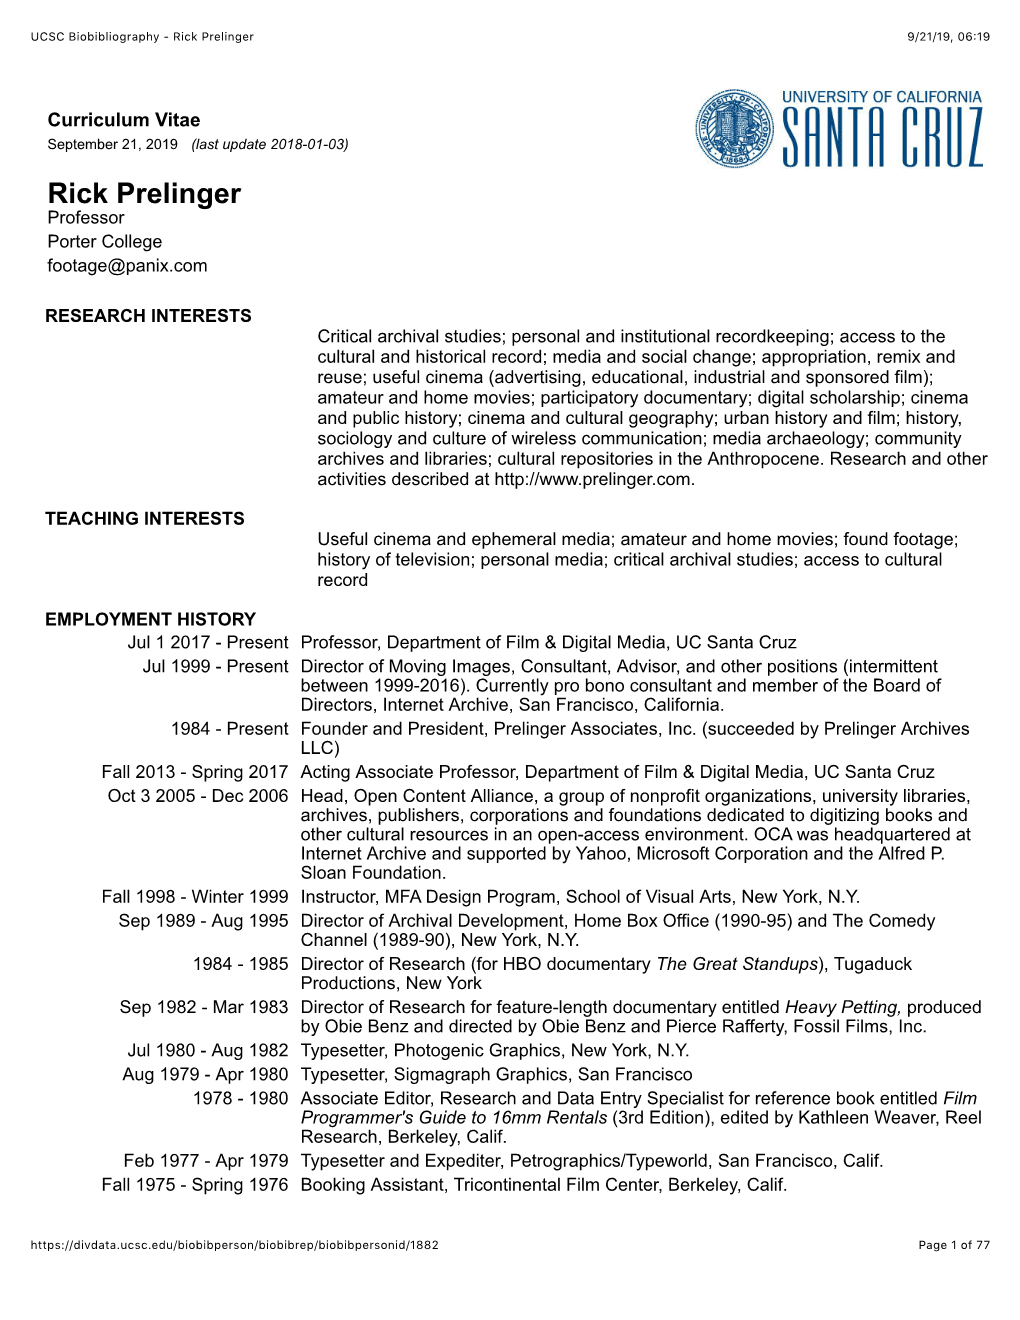 UCSC Biobibliography - Rick Prelinger 9/21/19, 06�19